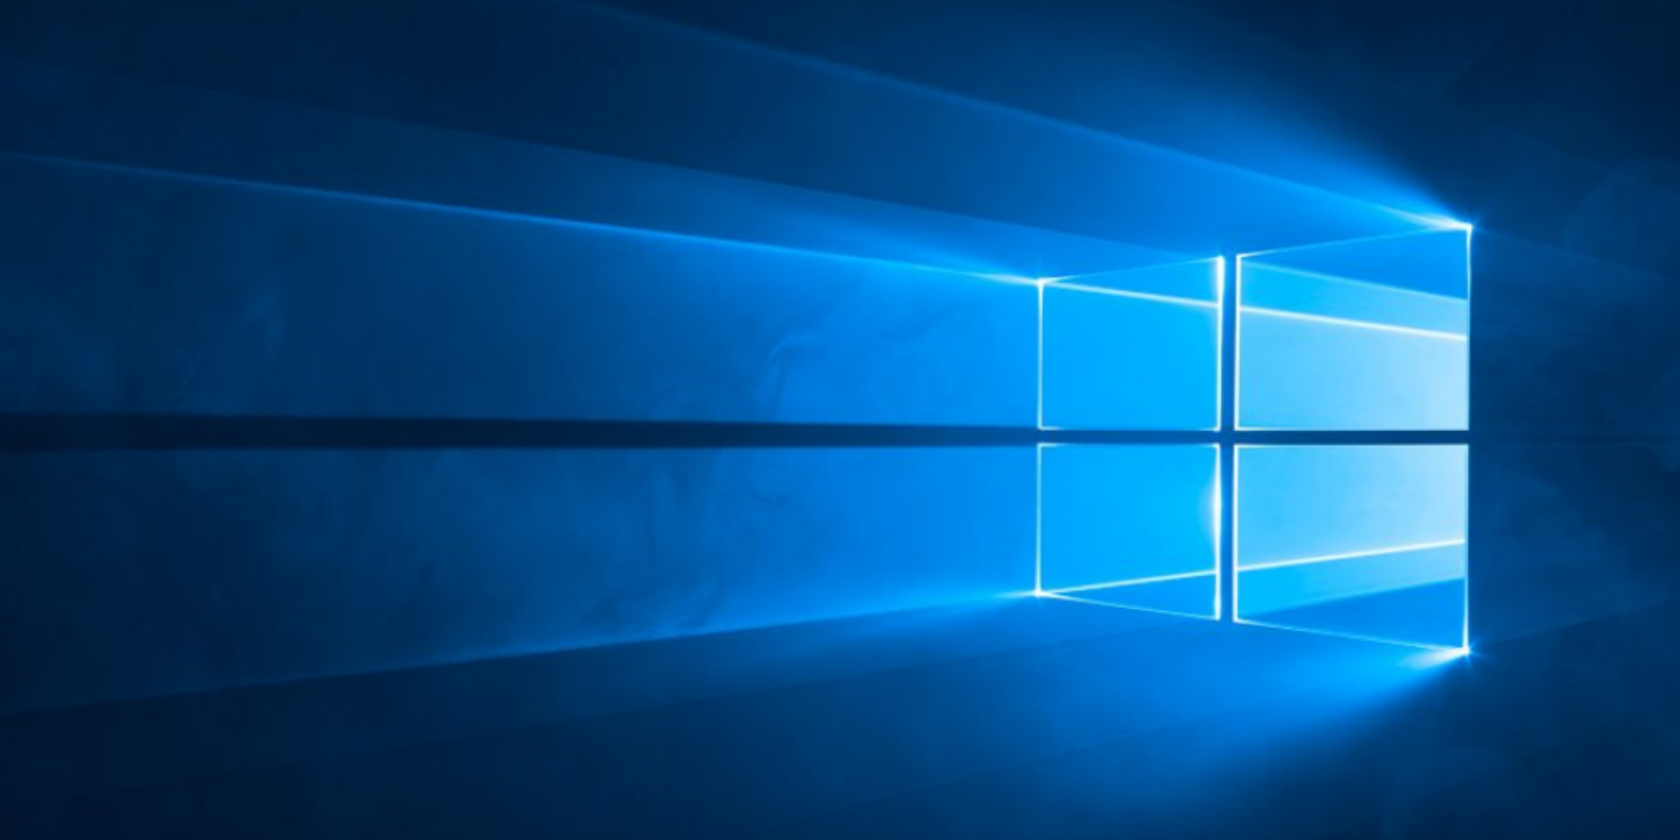 Windows 10 hiện đã có mặt trên 600 triệu thiết bị trên toàn cầu